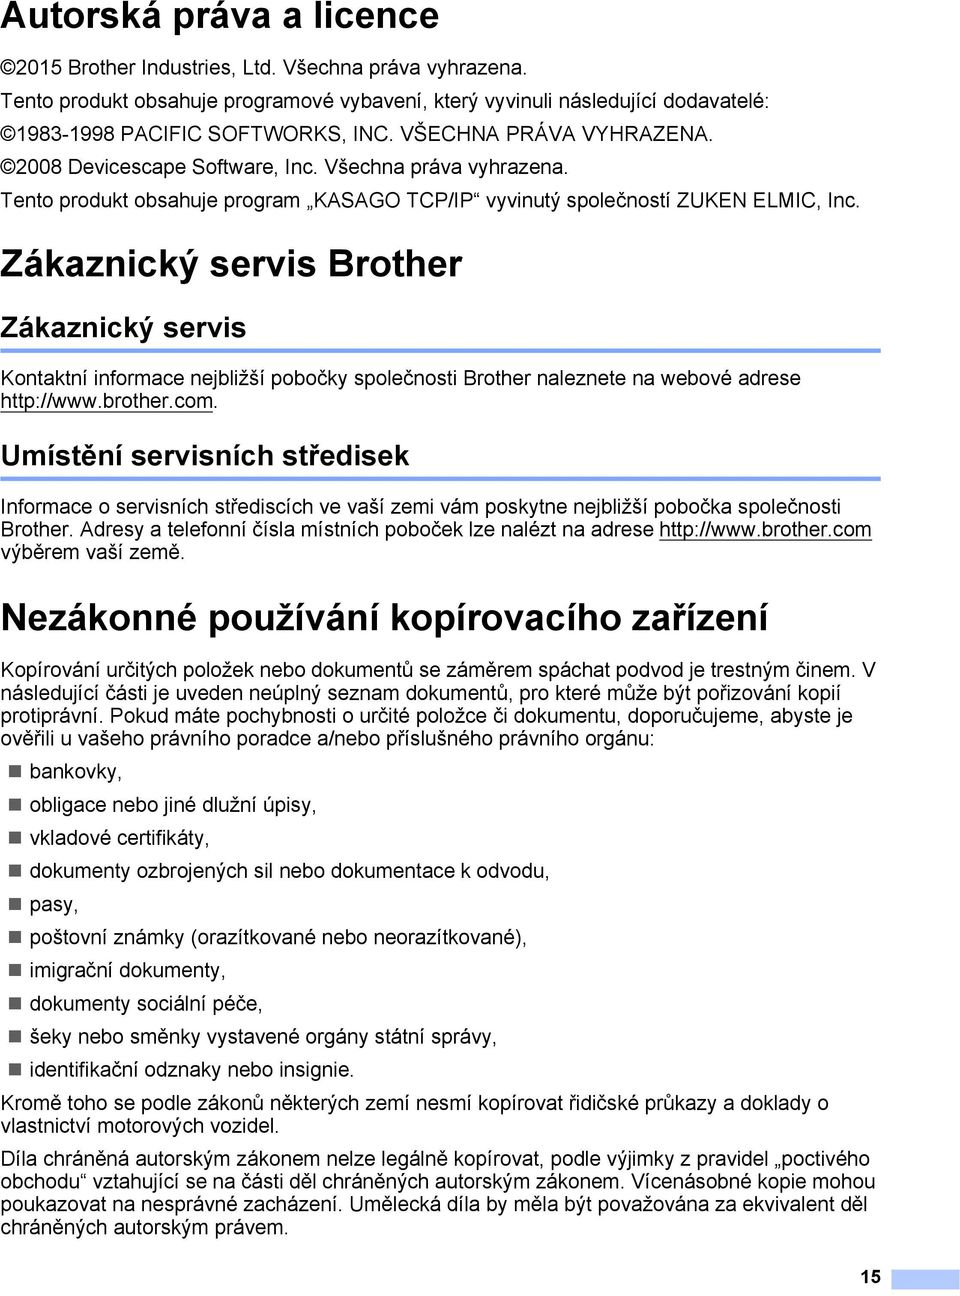 Zákaznický servis Brother 1 Zákaznický servis 1 Kontaktní informace nejbližší pobočky společnosti Brother naleznete na webové adrese http://www.brother.com.